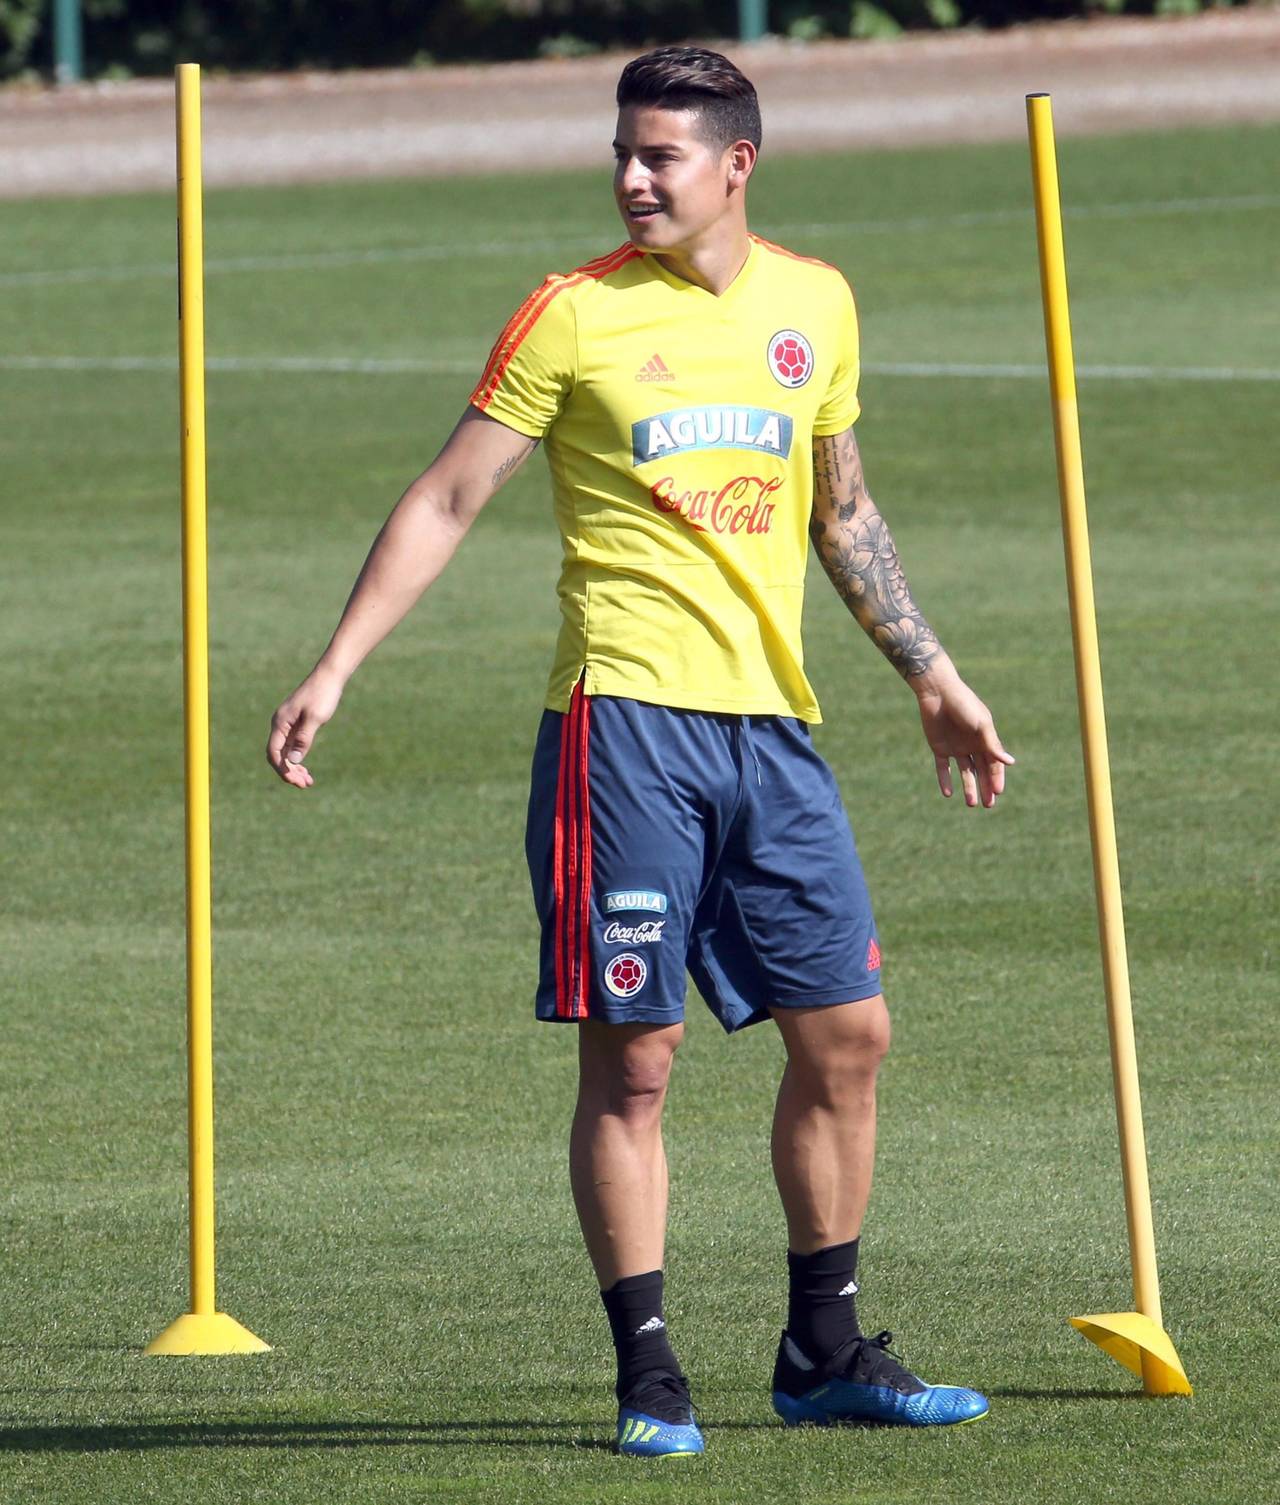 El futbolista James Rodríguez participa en un entrenamiento. Confiscan 5 mil camisetas falsas